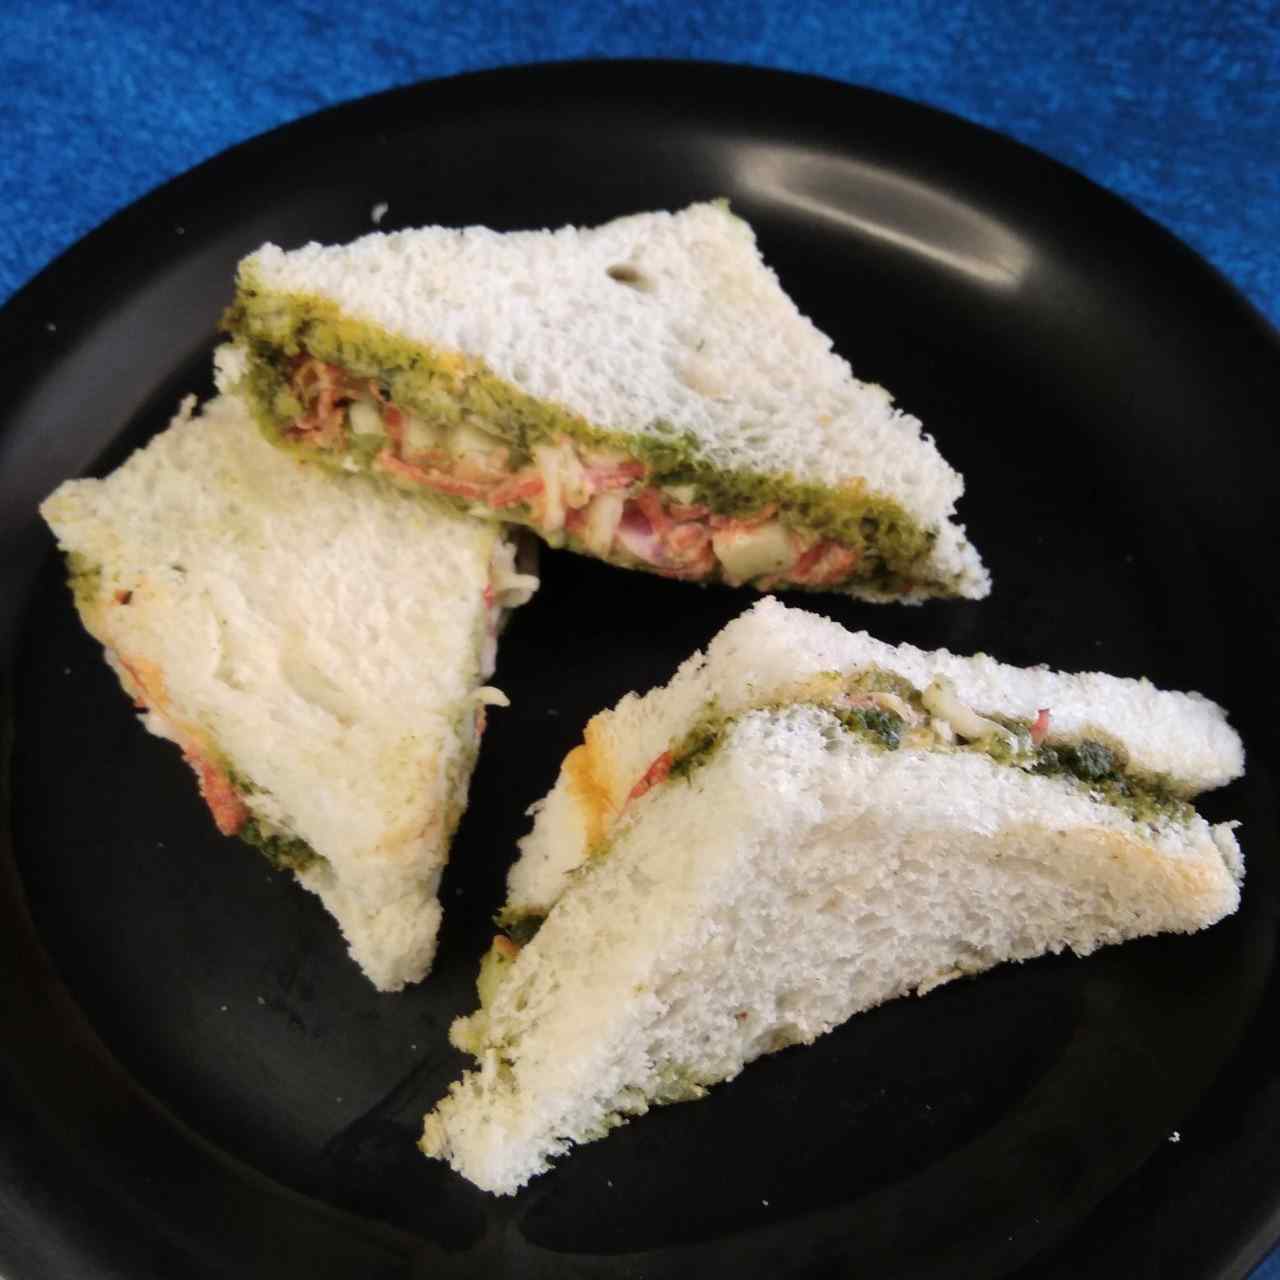 Mayonnaise Sandwich Recipe